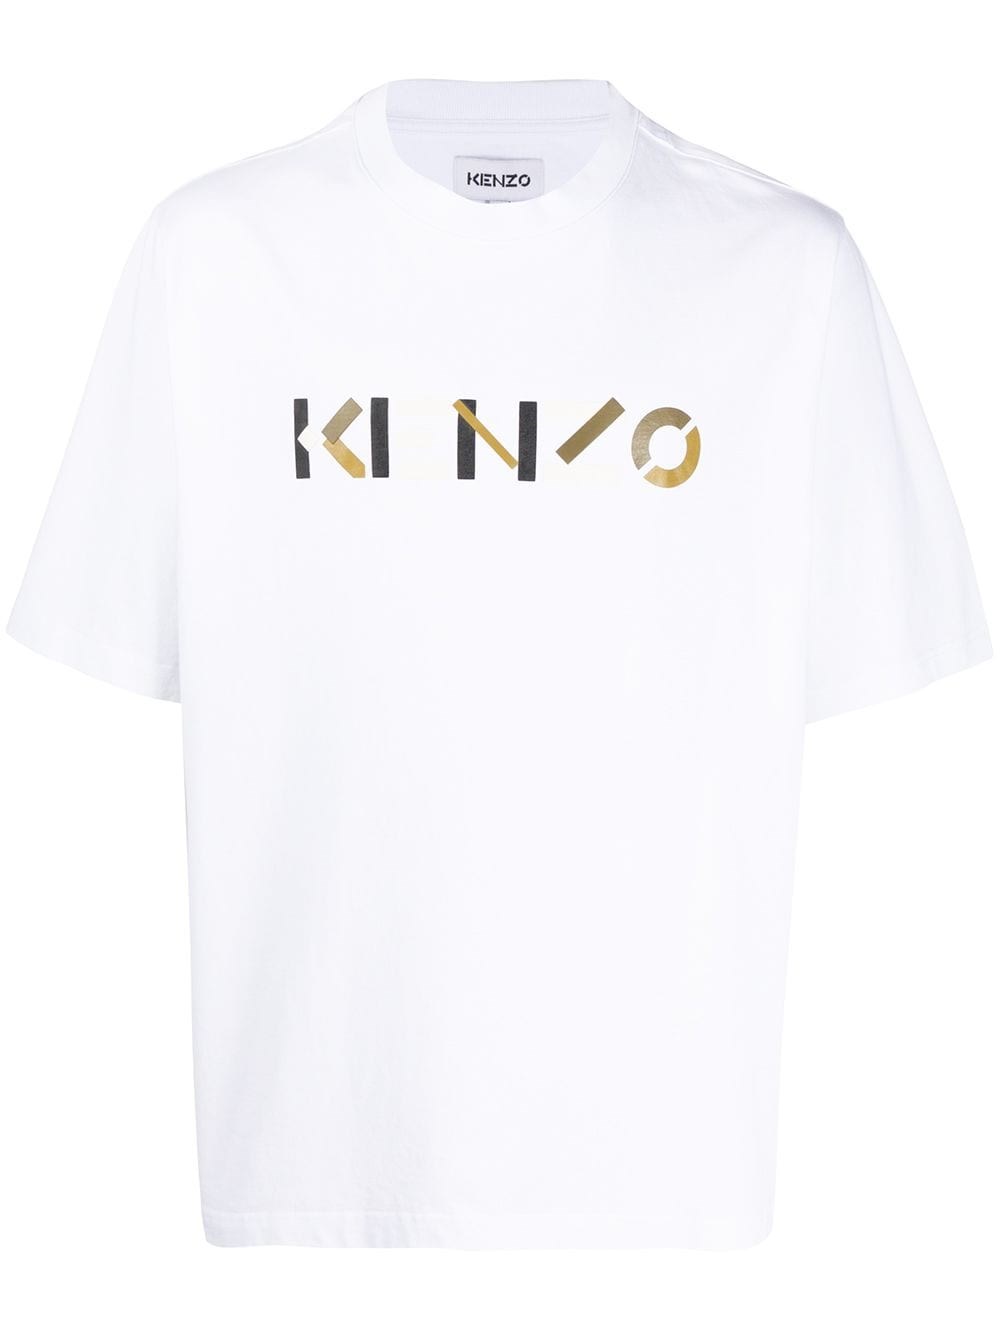 kenzo t shirt logo